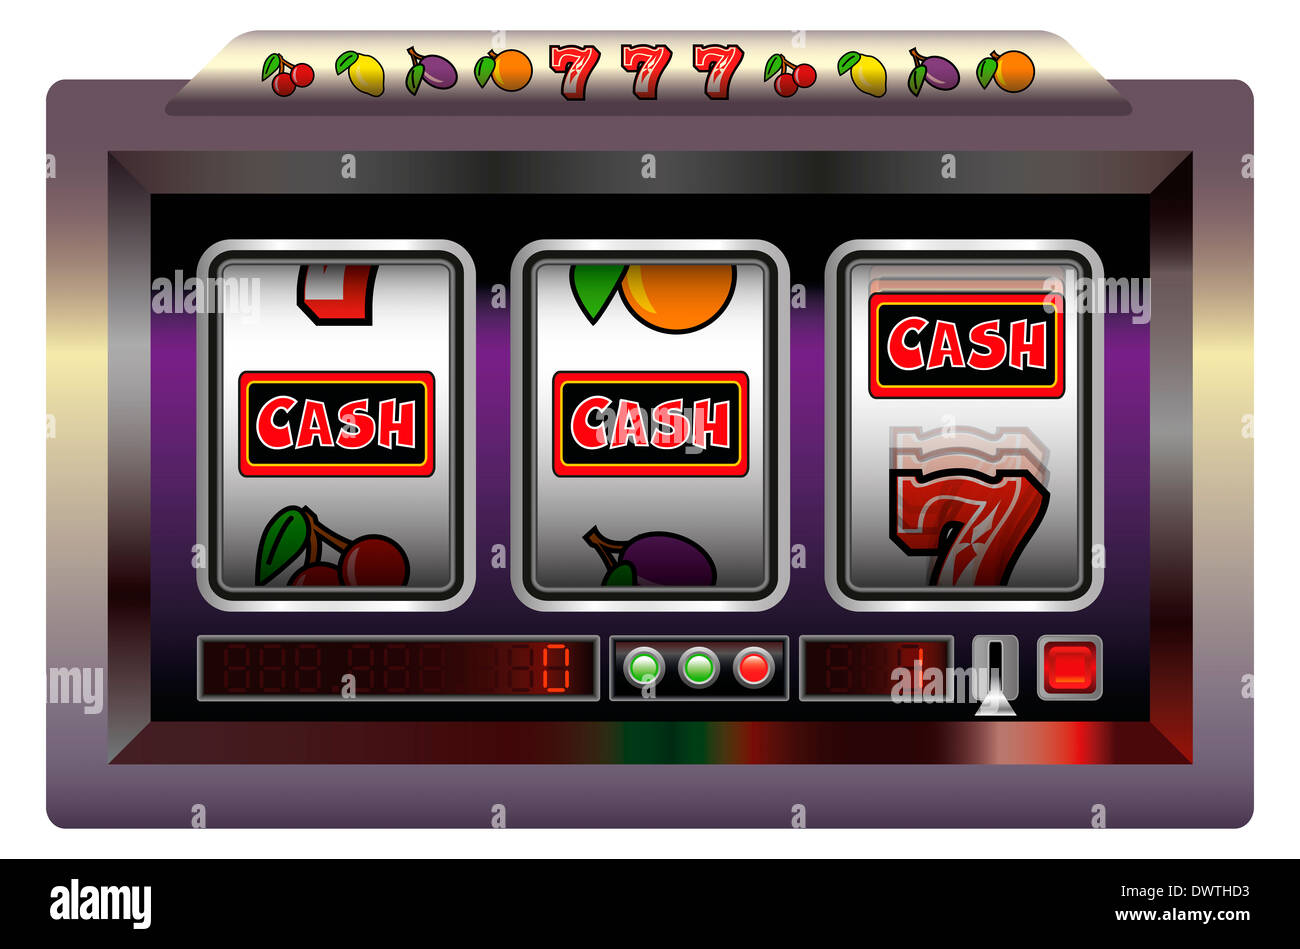 Illustrazione di una slot machine con tre bobine, slot machine i simboli e le scritte in contanti. Foto Stock